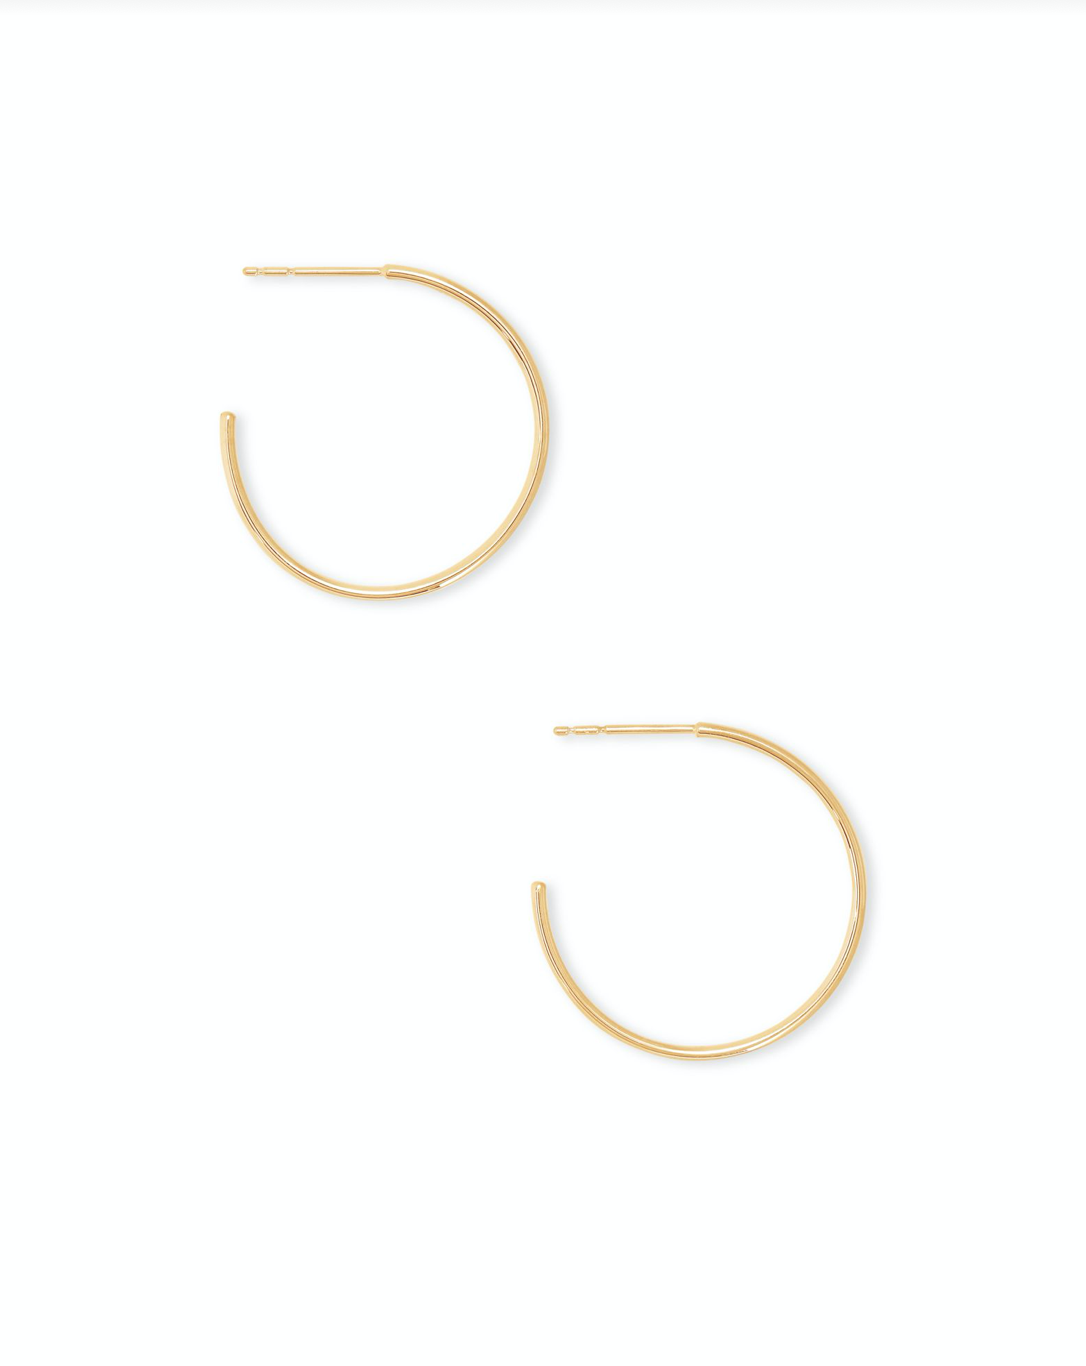 Keeley Small Hoop Earrings in 18k Gold Vermeil